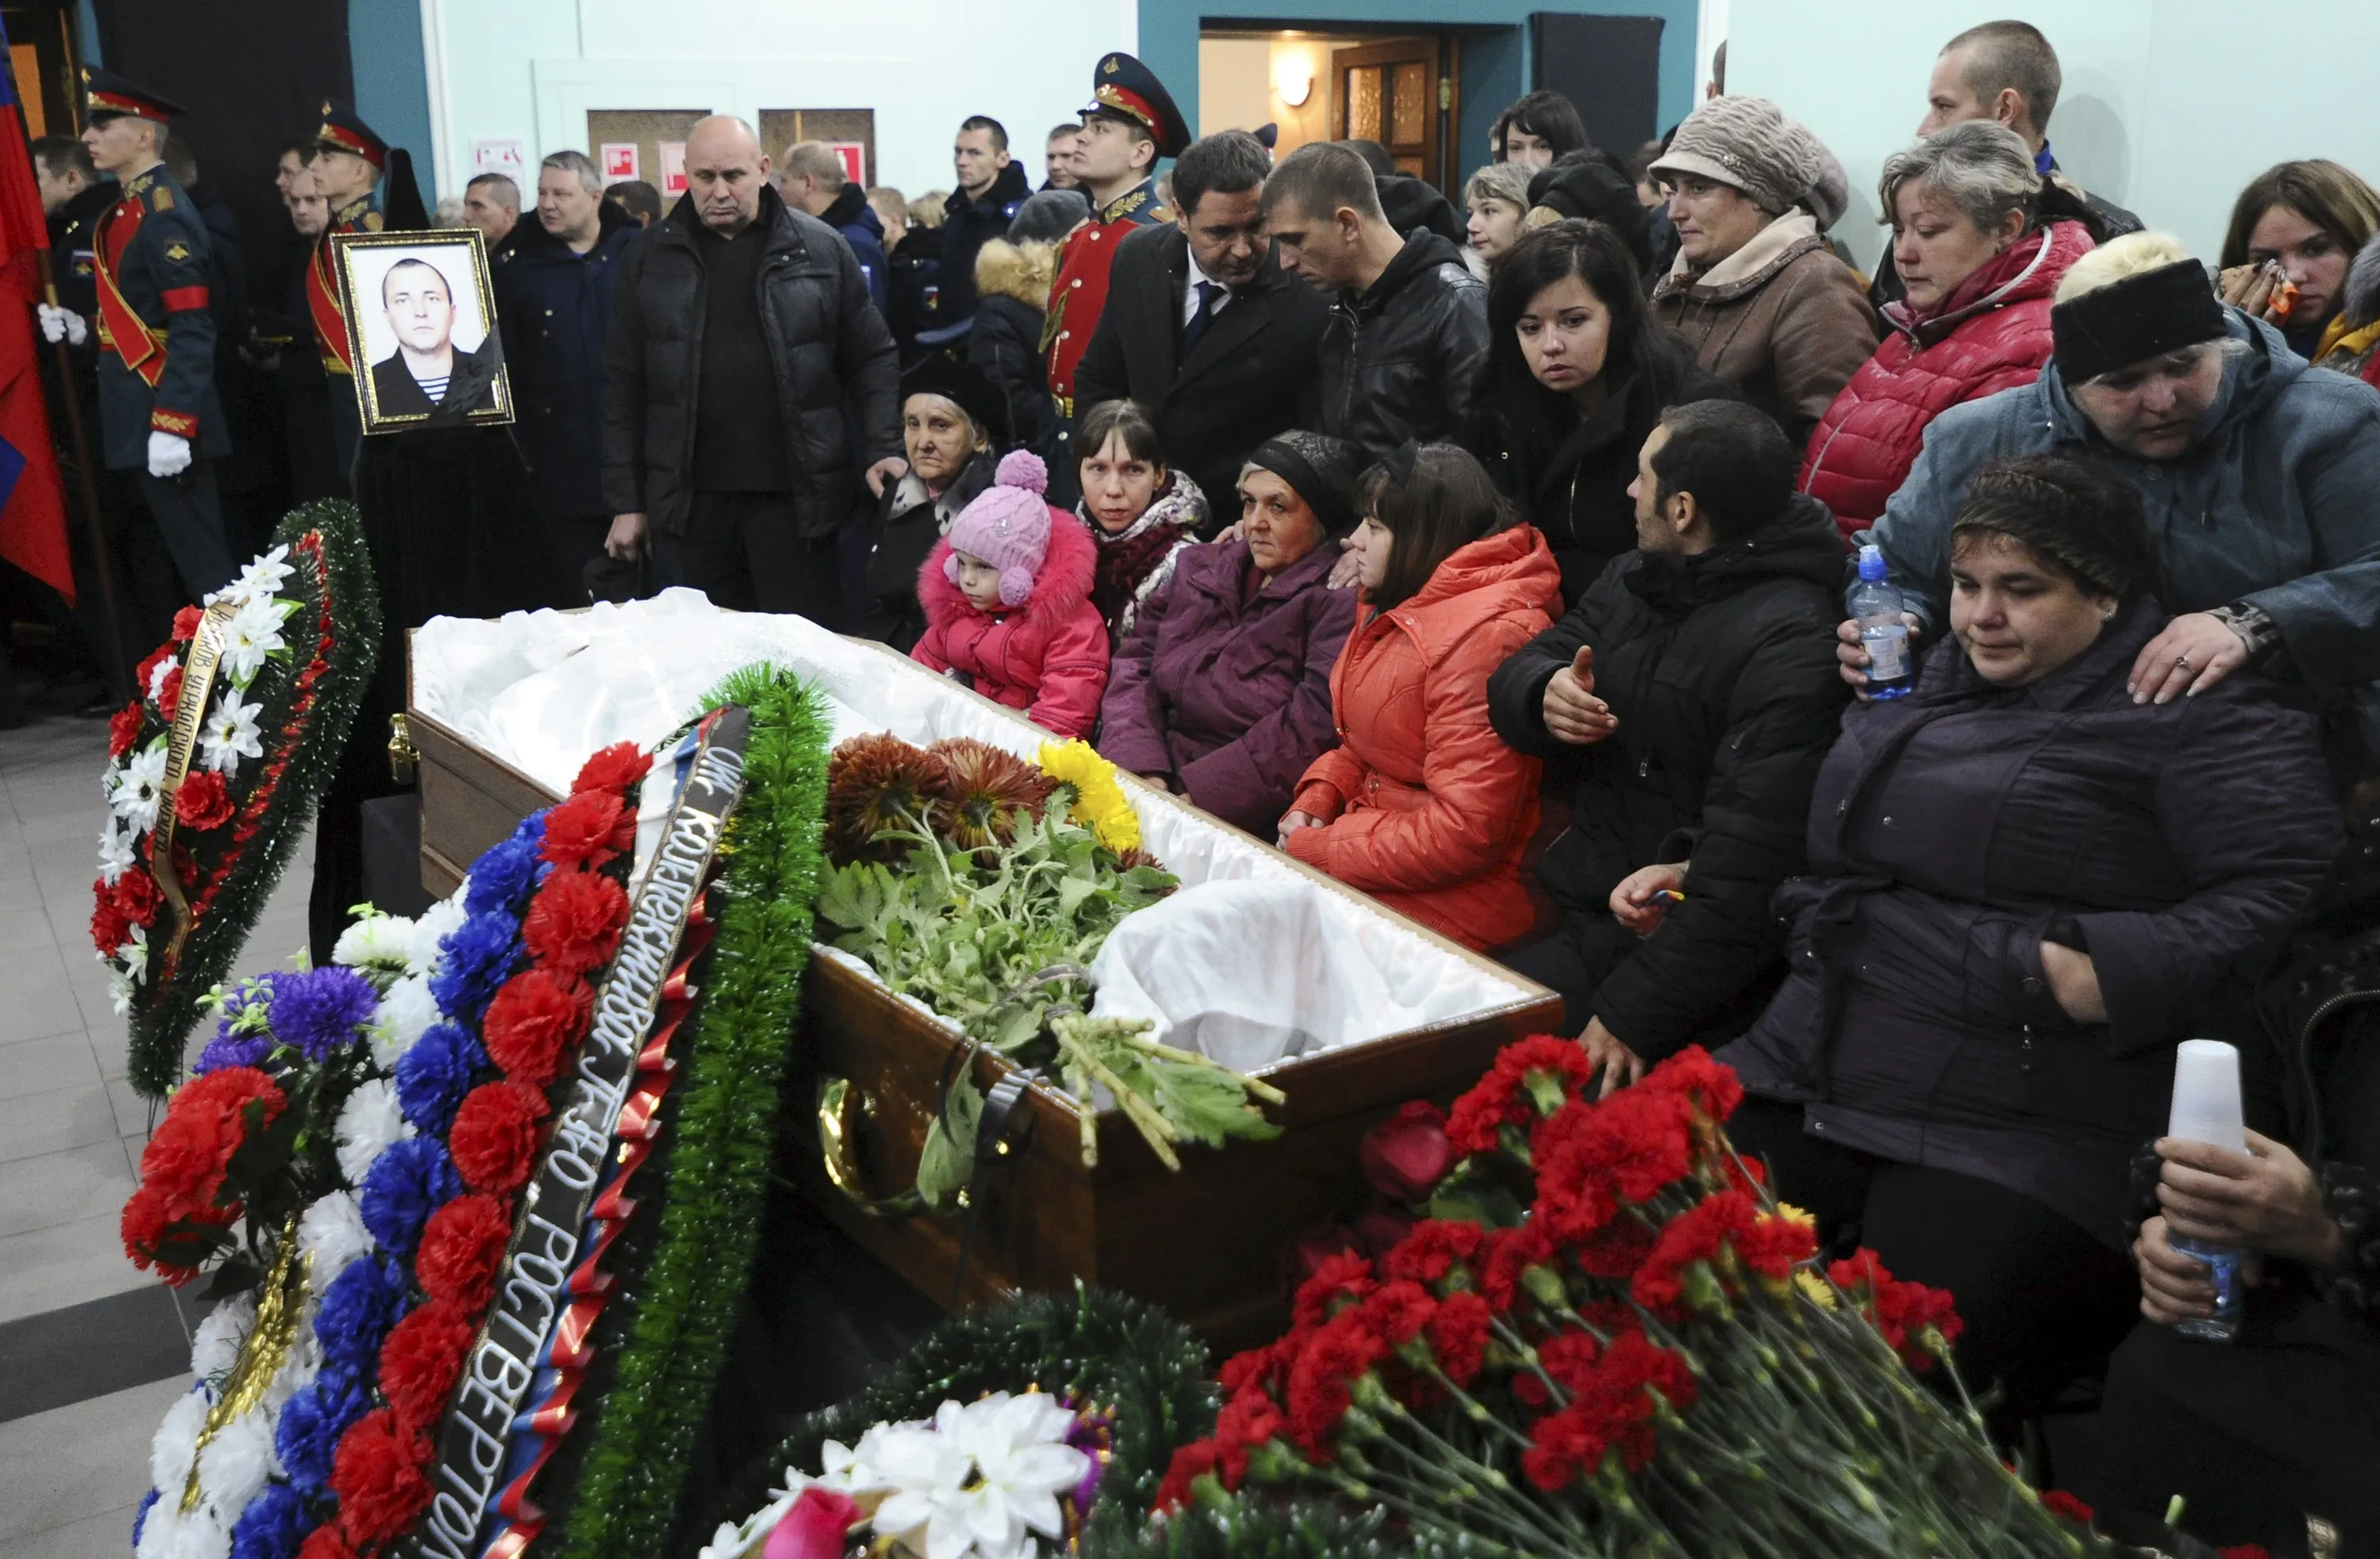 Последние новости сколько погибших. Похороны военнослужащего. Похороны российских солдат. По0ороеы российских солдат.